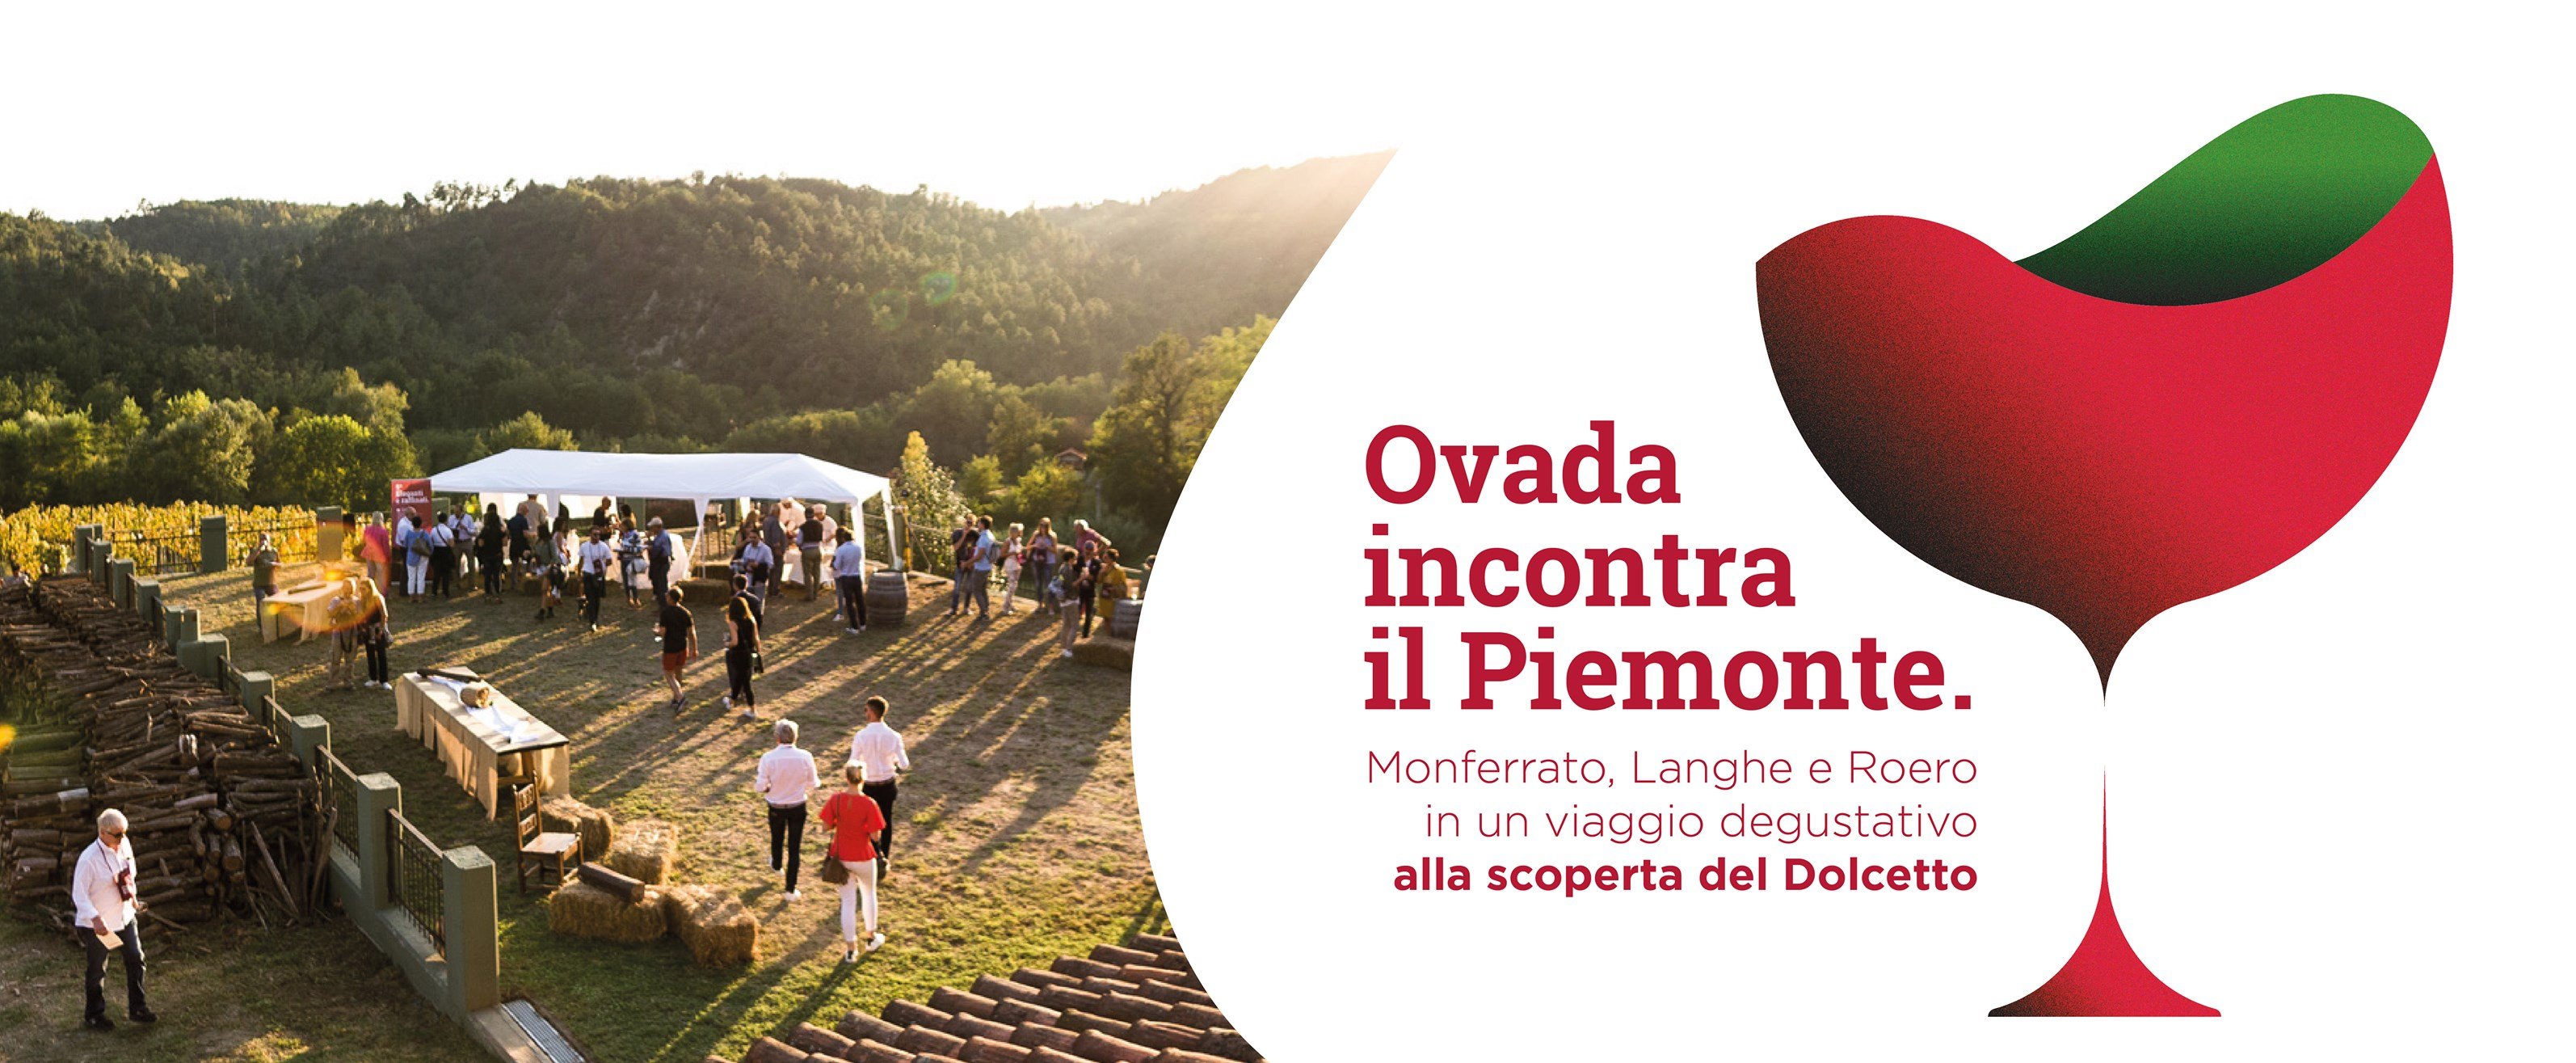 A Cremolino “Ovada incontra il Piemonte” e i vini si abbinano a piatti stellati